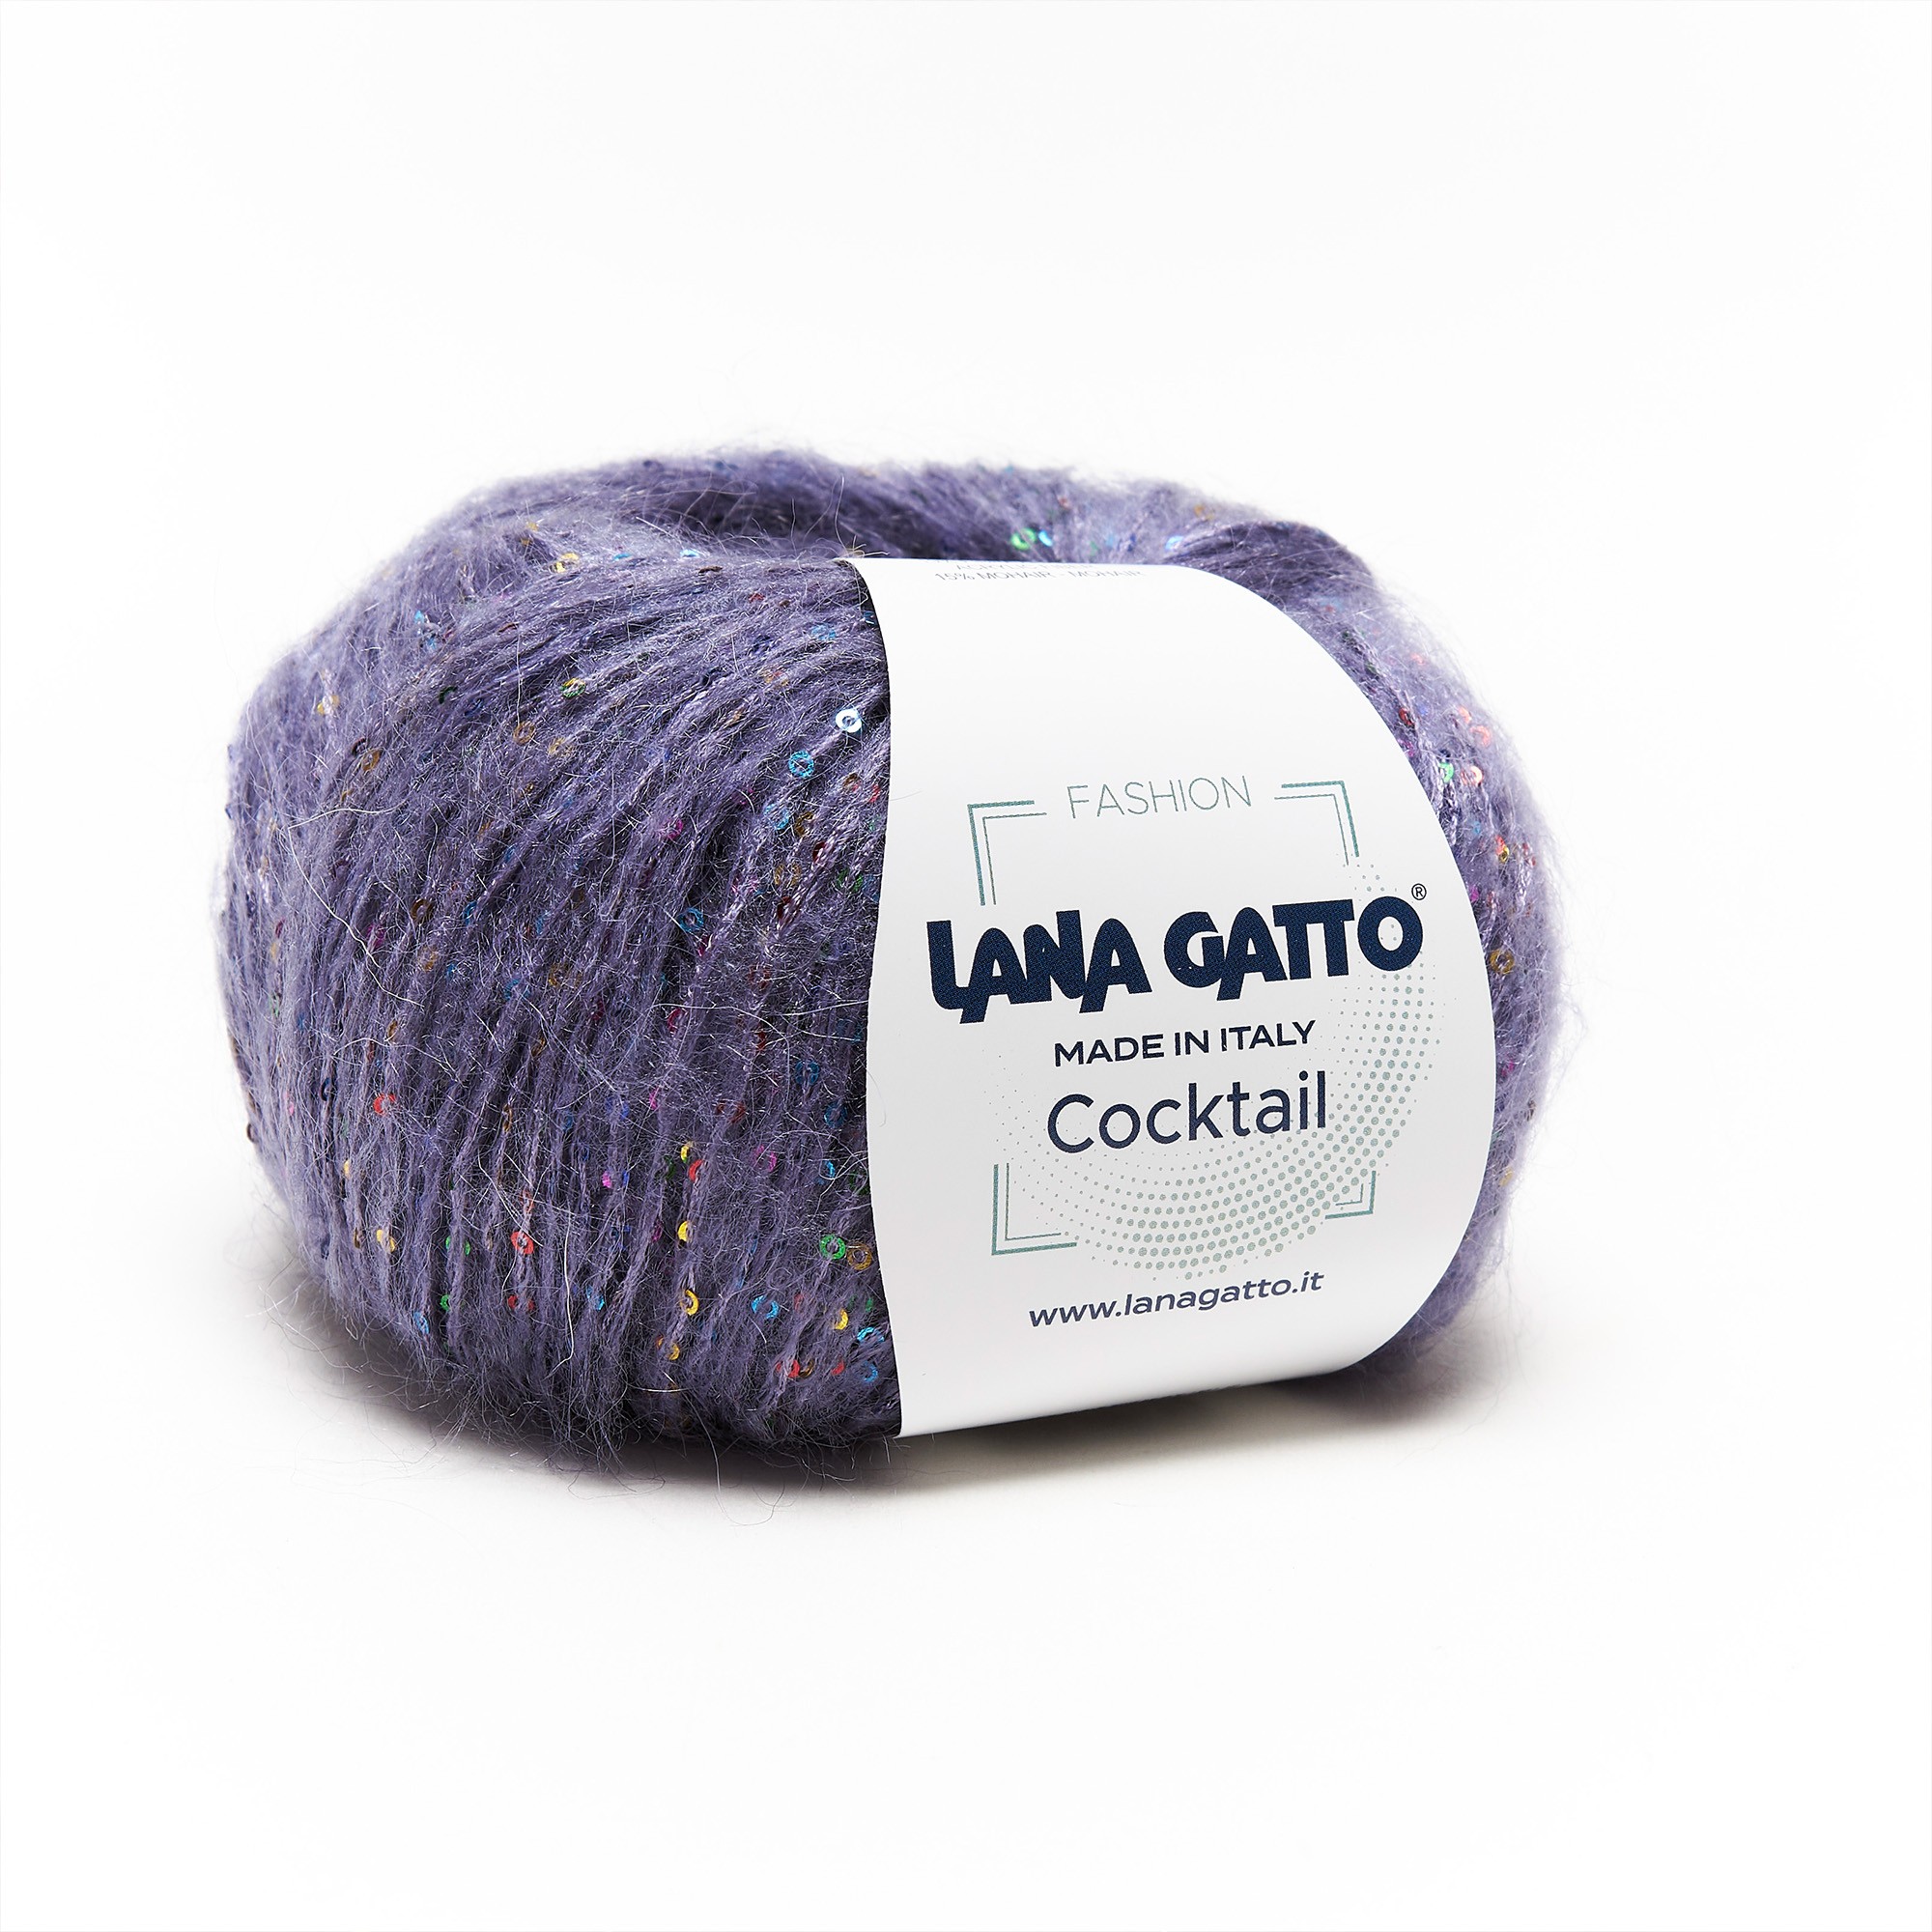 Cocktail by Lana Gatto - Filato misto lana per lavorazioni luminose